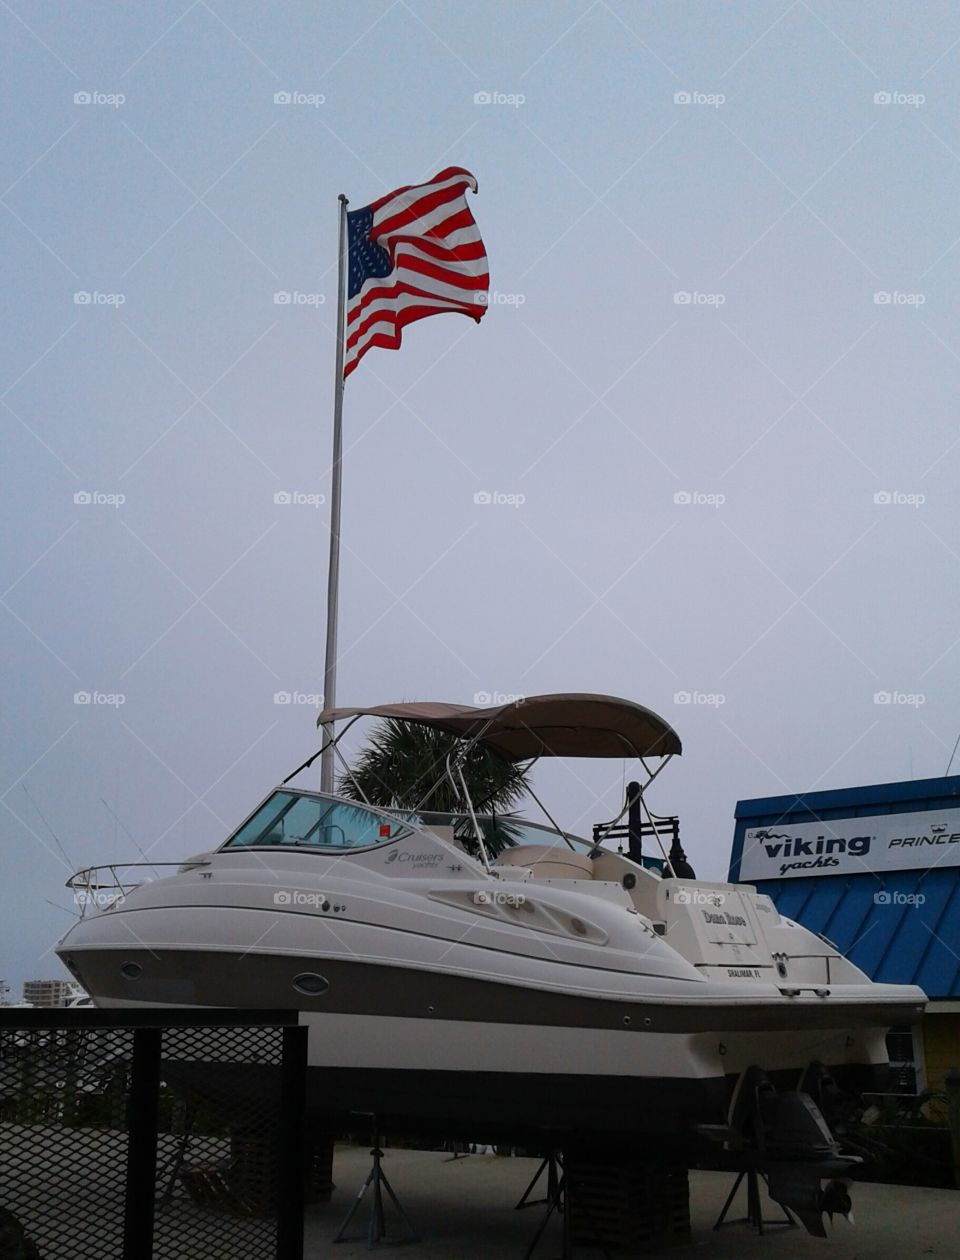 Boat & Flag